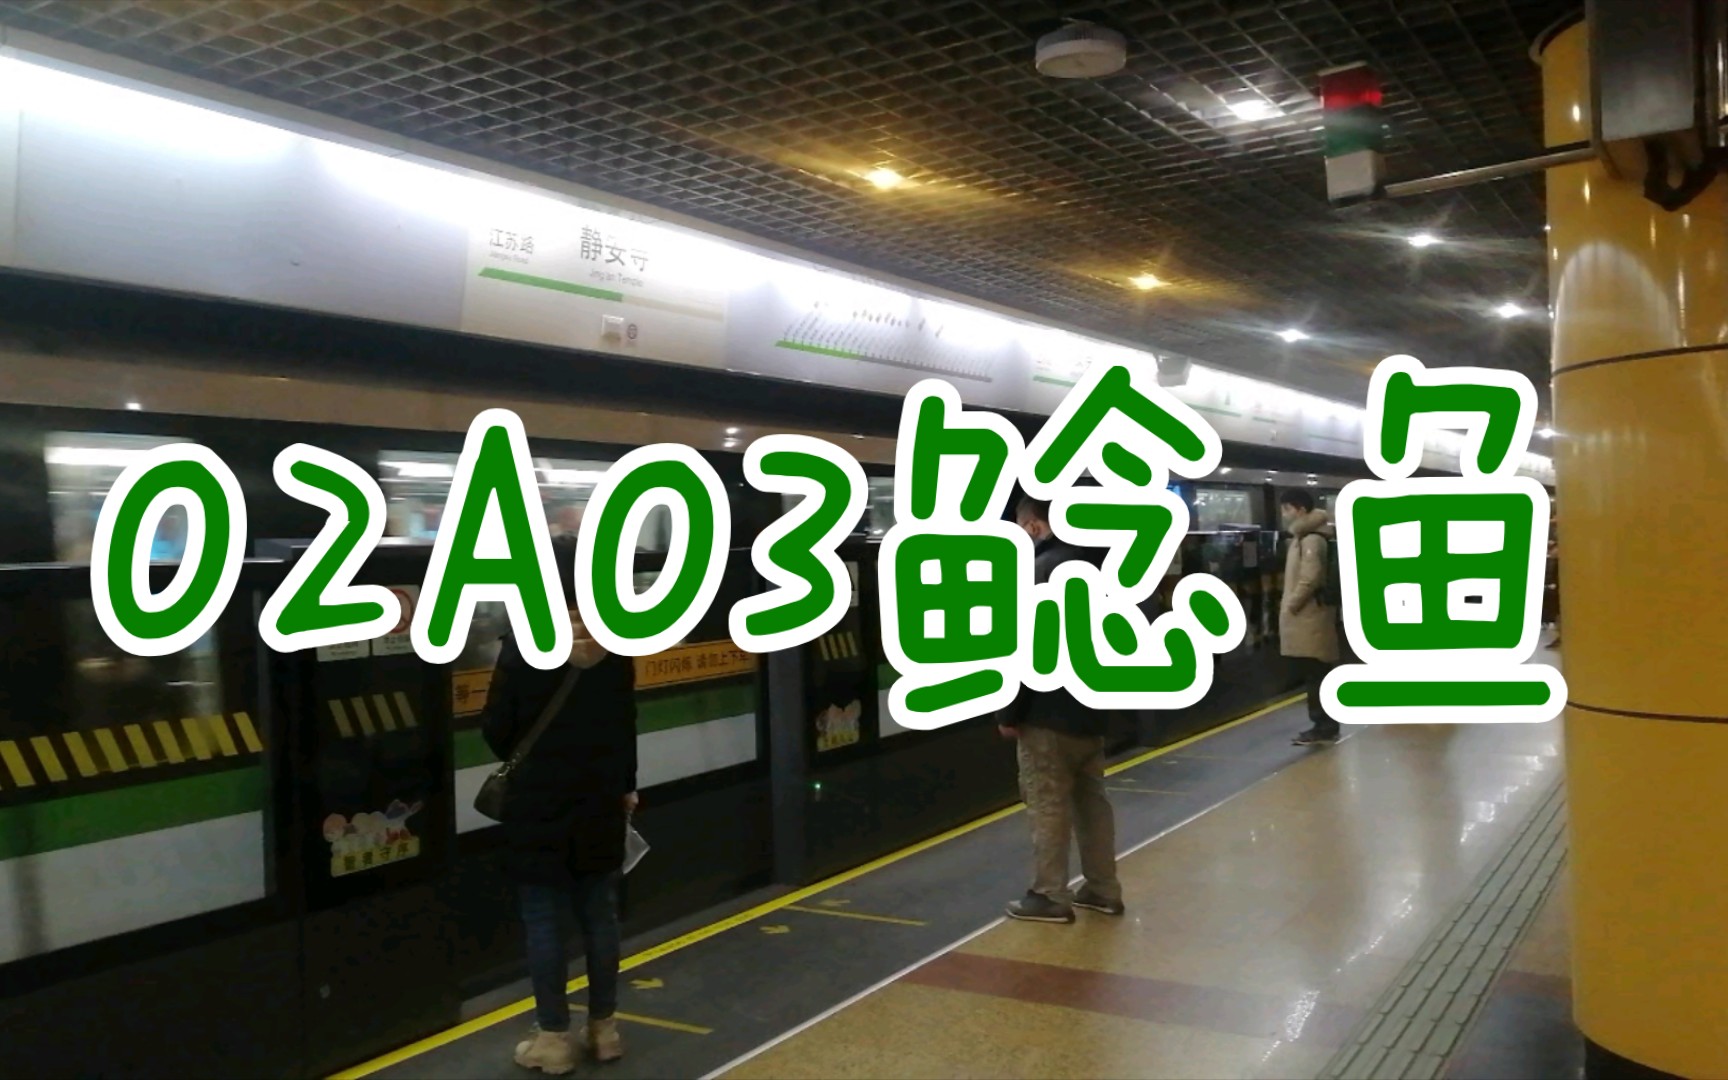 上海地铁2号线小鲶鱼图片